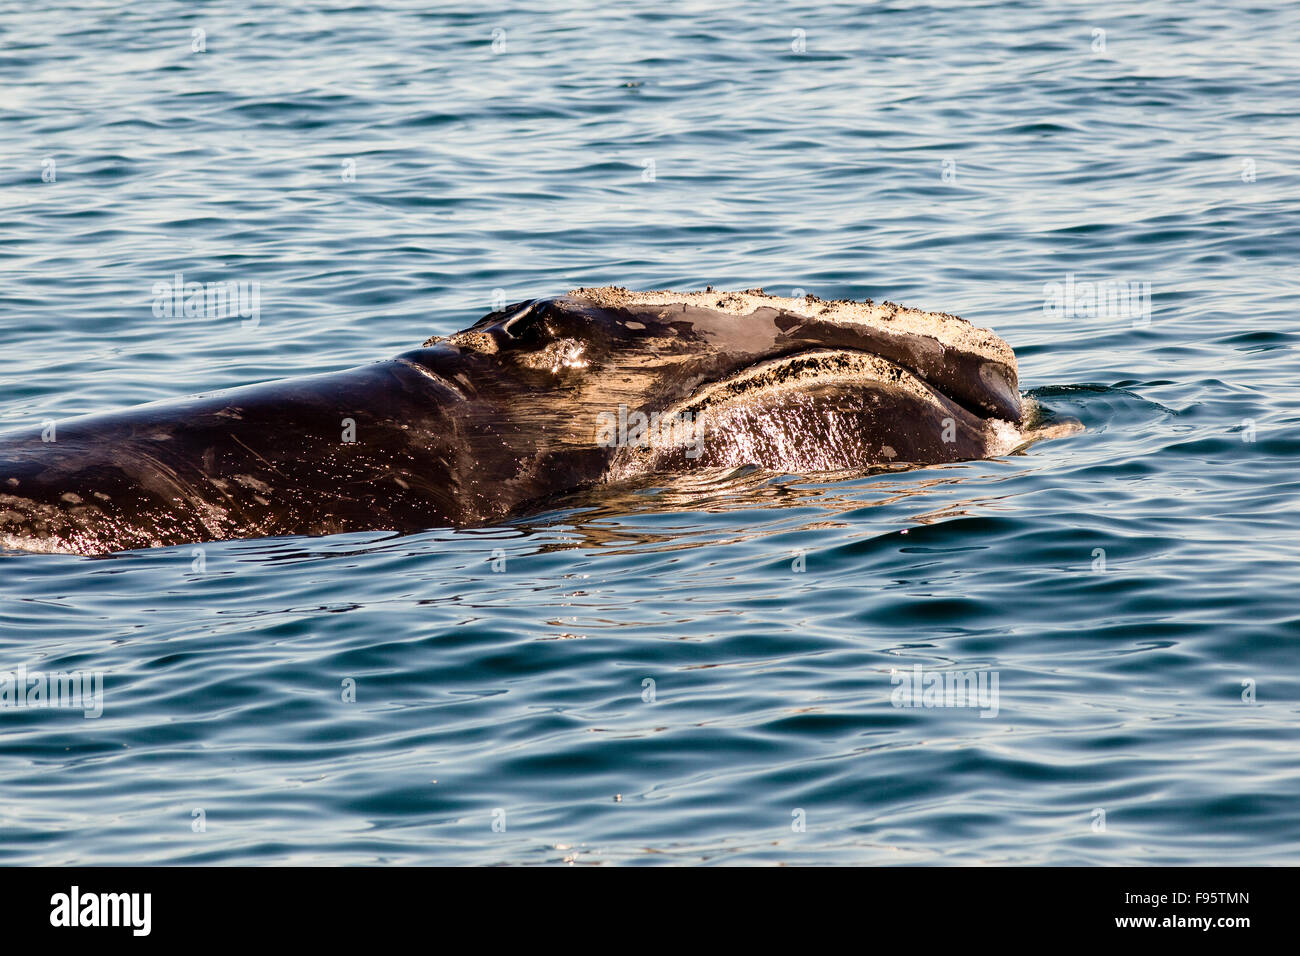 Baleine noire de l'Atlantique Nord (Eubalaena glacialis), Grand Manan, bassin, la baie de Fundy, Nouveau-Brunswick, Canada Banque D'Images